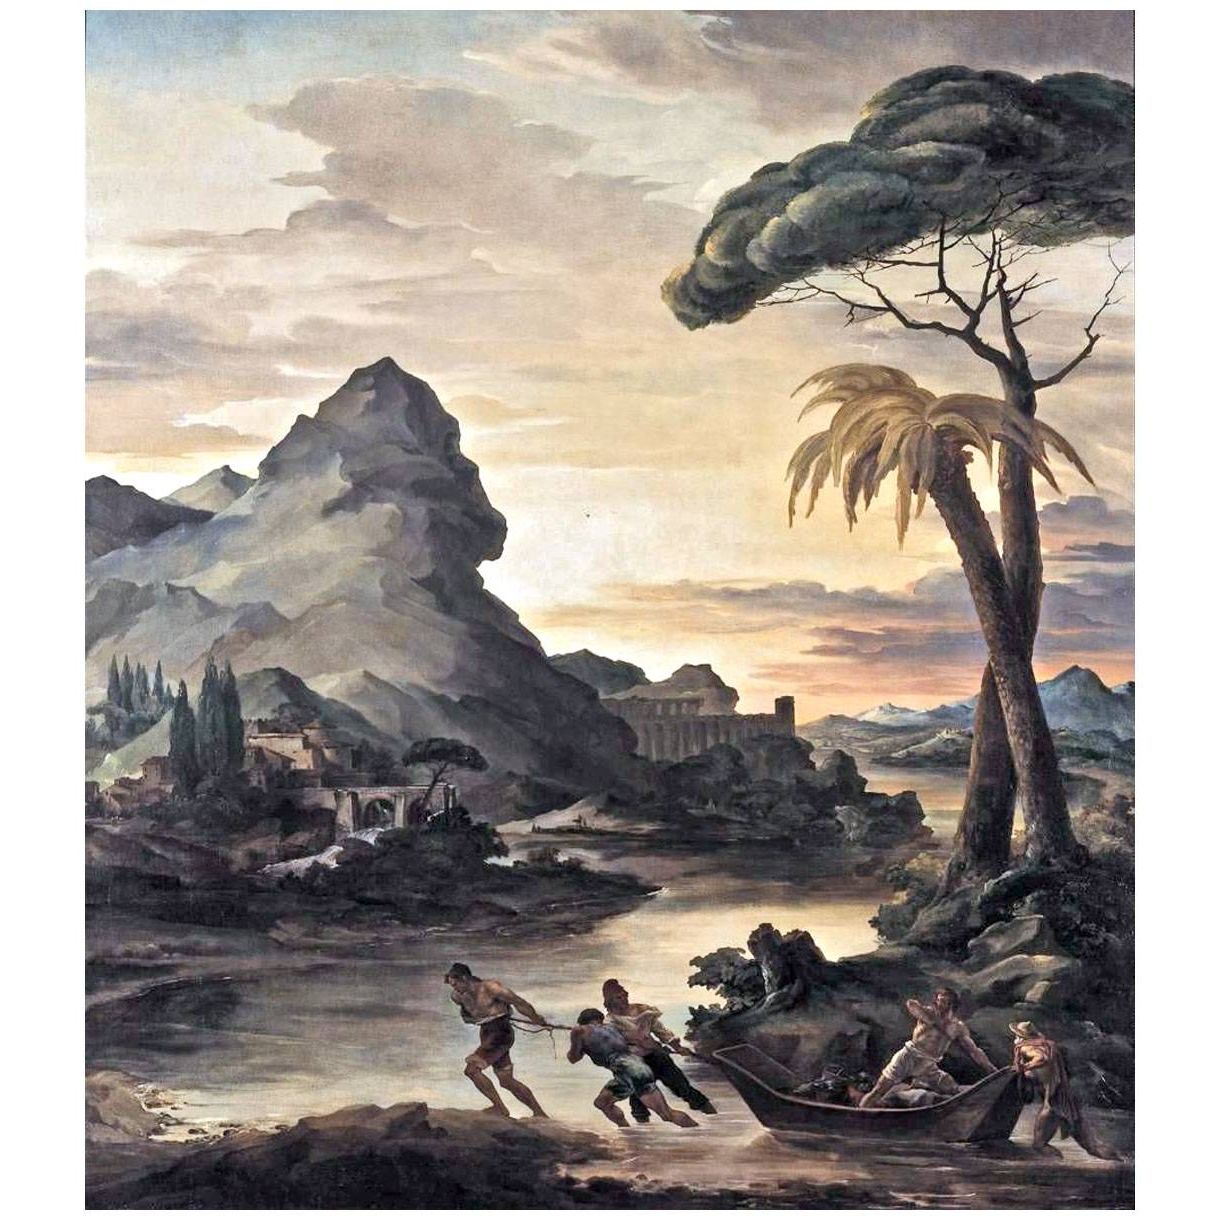 Theodore Gericault. Paysage héroïque avec des pêcheurs. 1818. Neue Pinakithek Munich